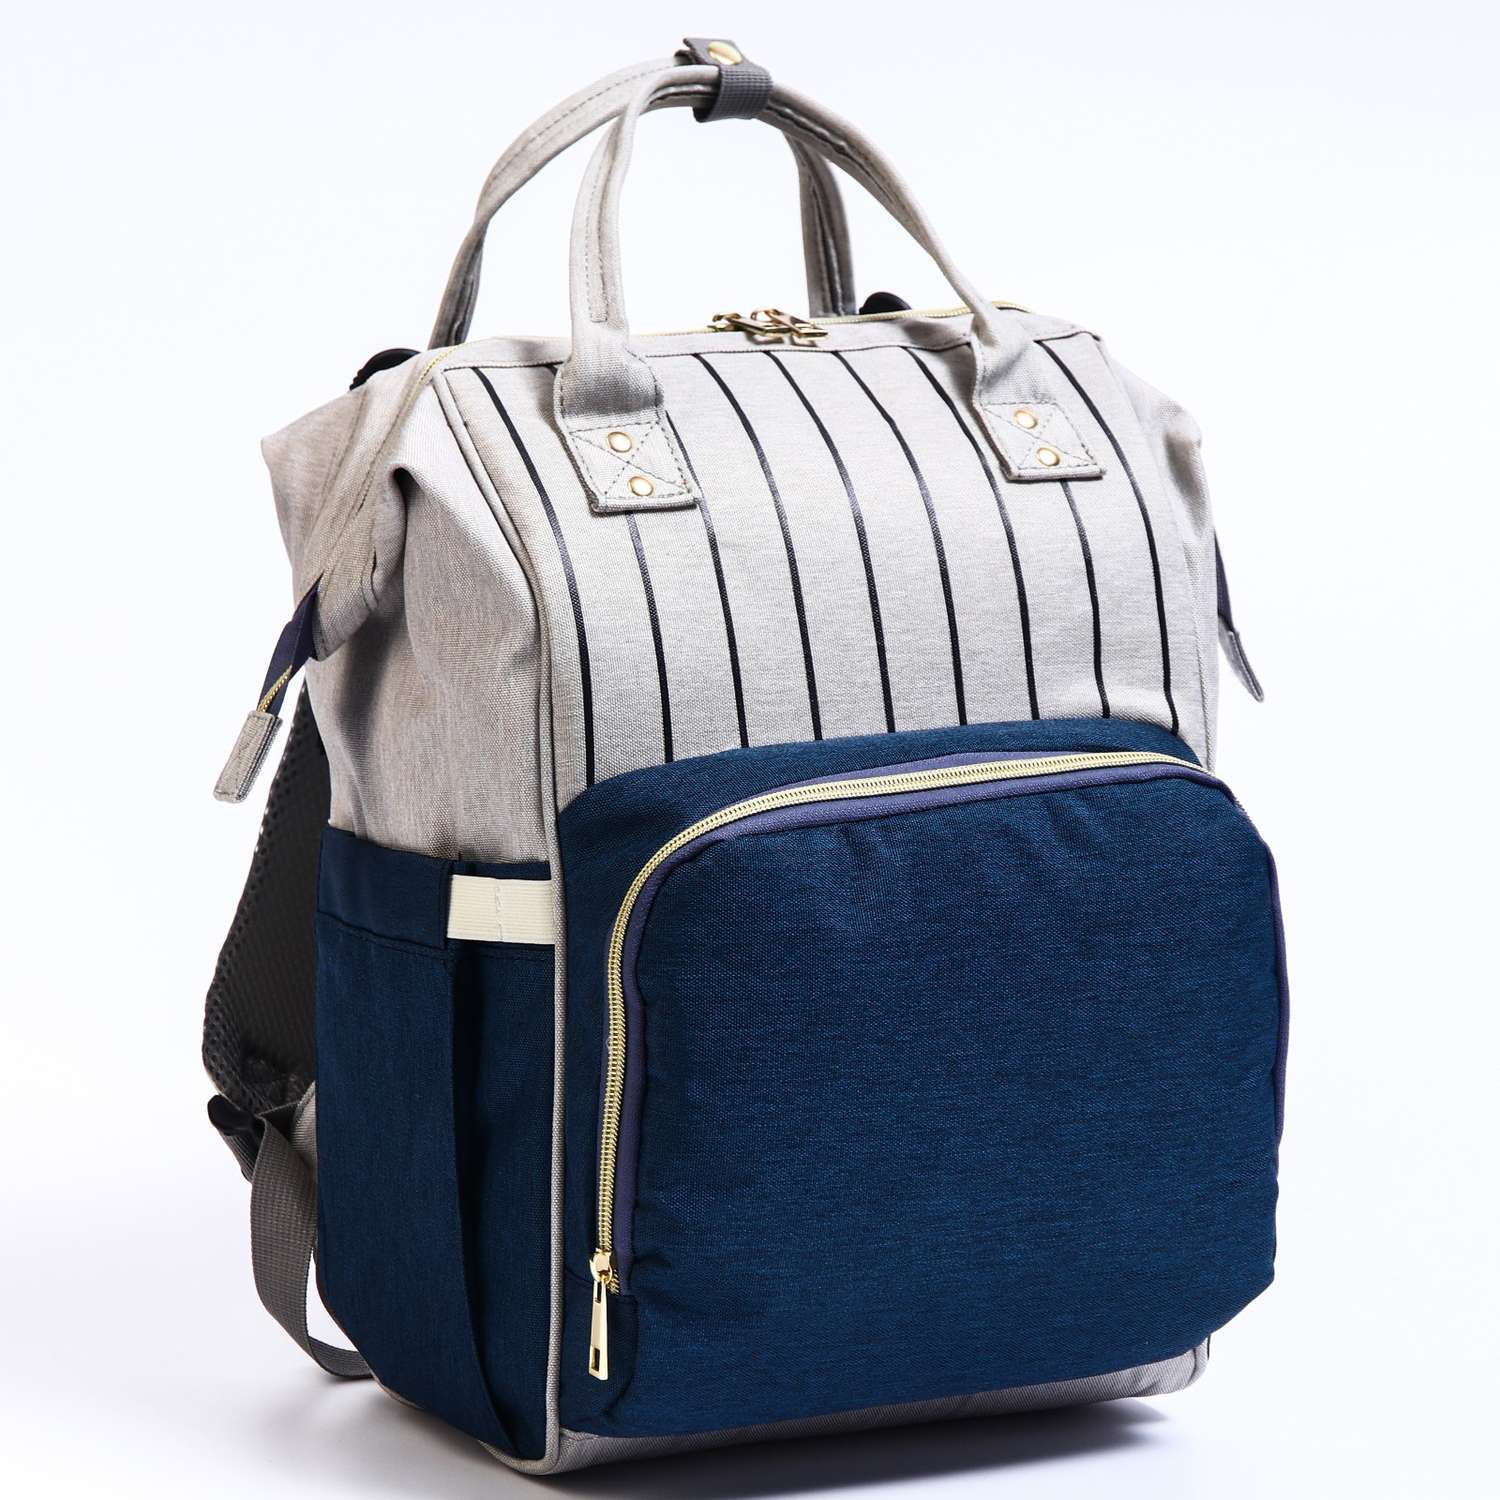 Сумка-рюкзак Sima-Land для хранения вещей малыша цвет серый/синий - фото 3